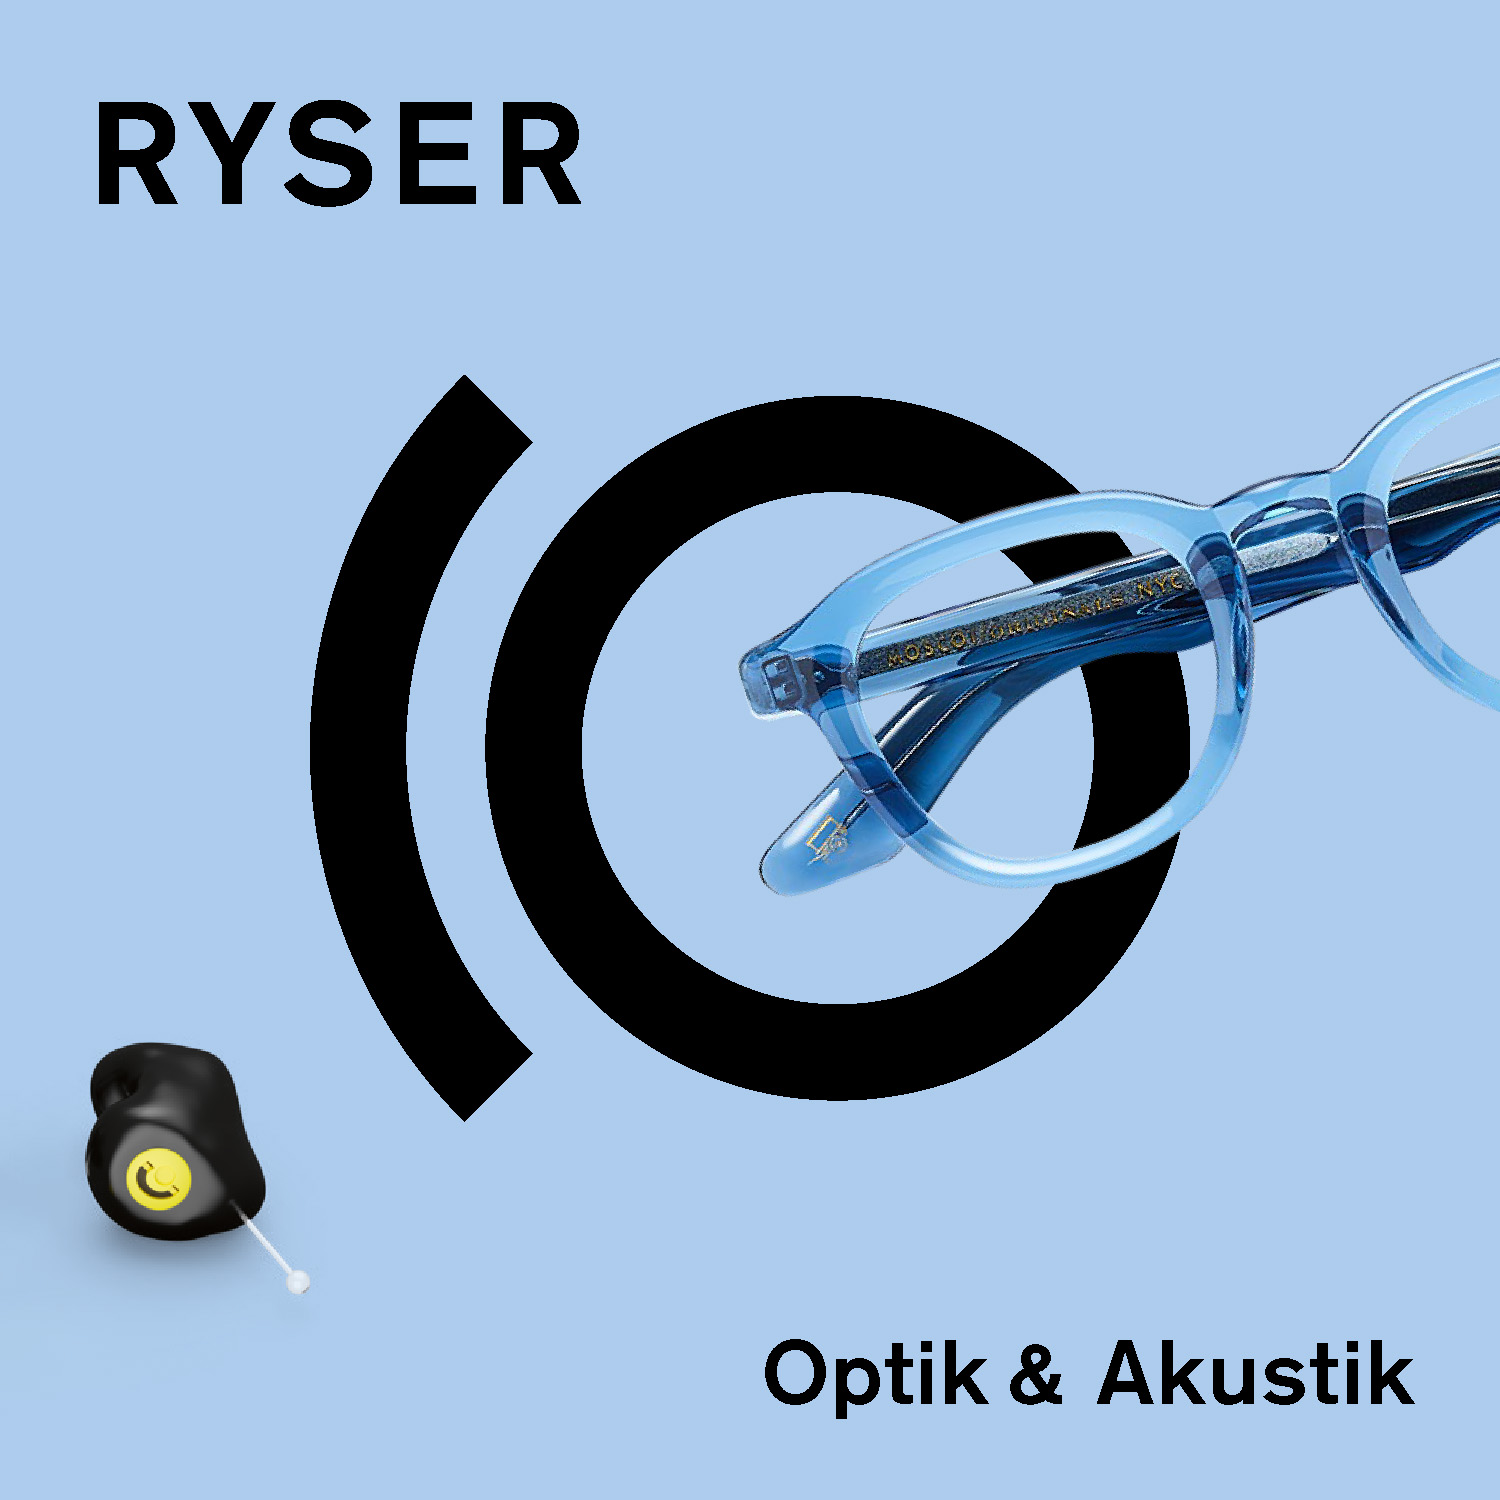 Vorderseite Ryser Optik & Akustik Print-Kampagne